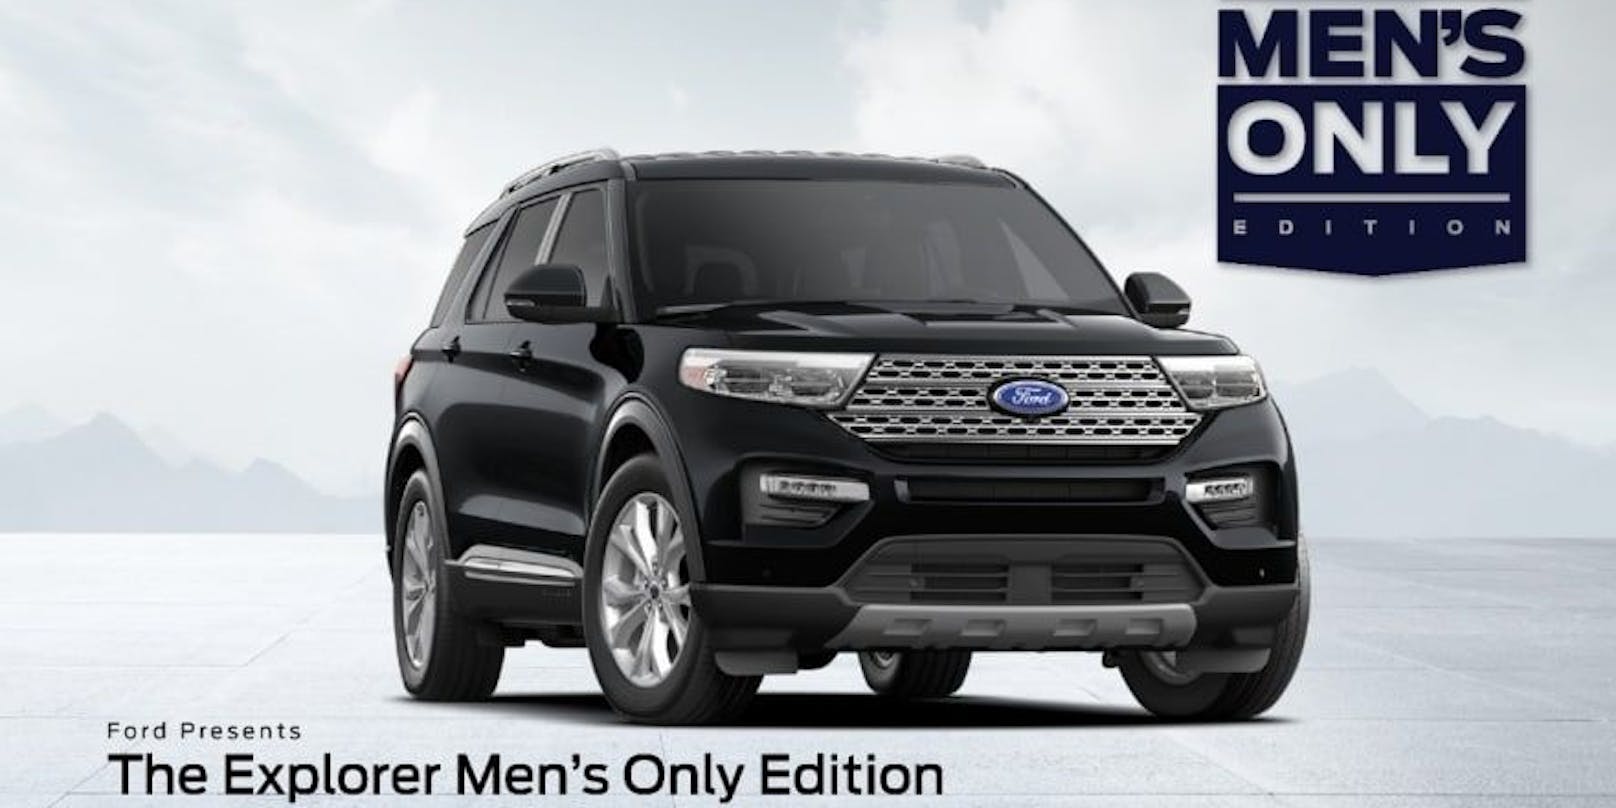 Das neue "Men's Only" Auto soll ein&nbsp;komplett neu konzipiertes Fahrzeug sein.